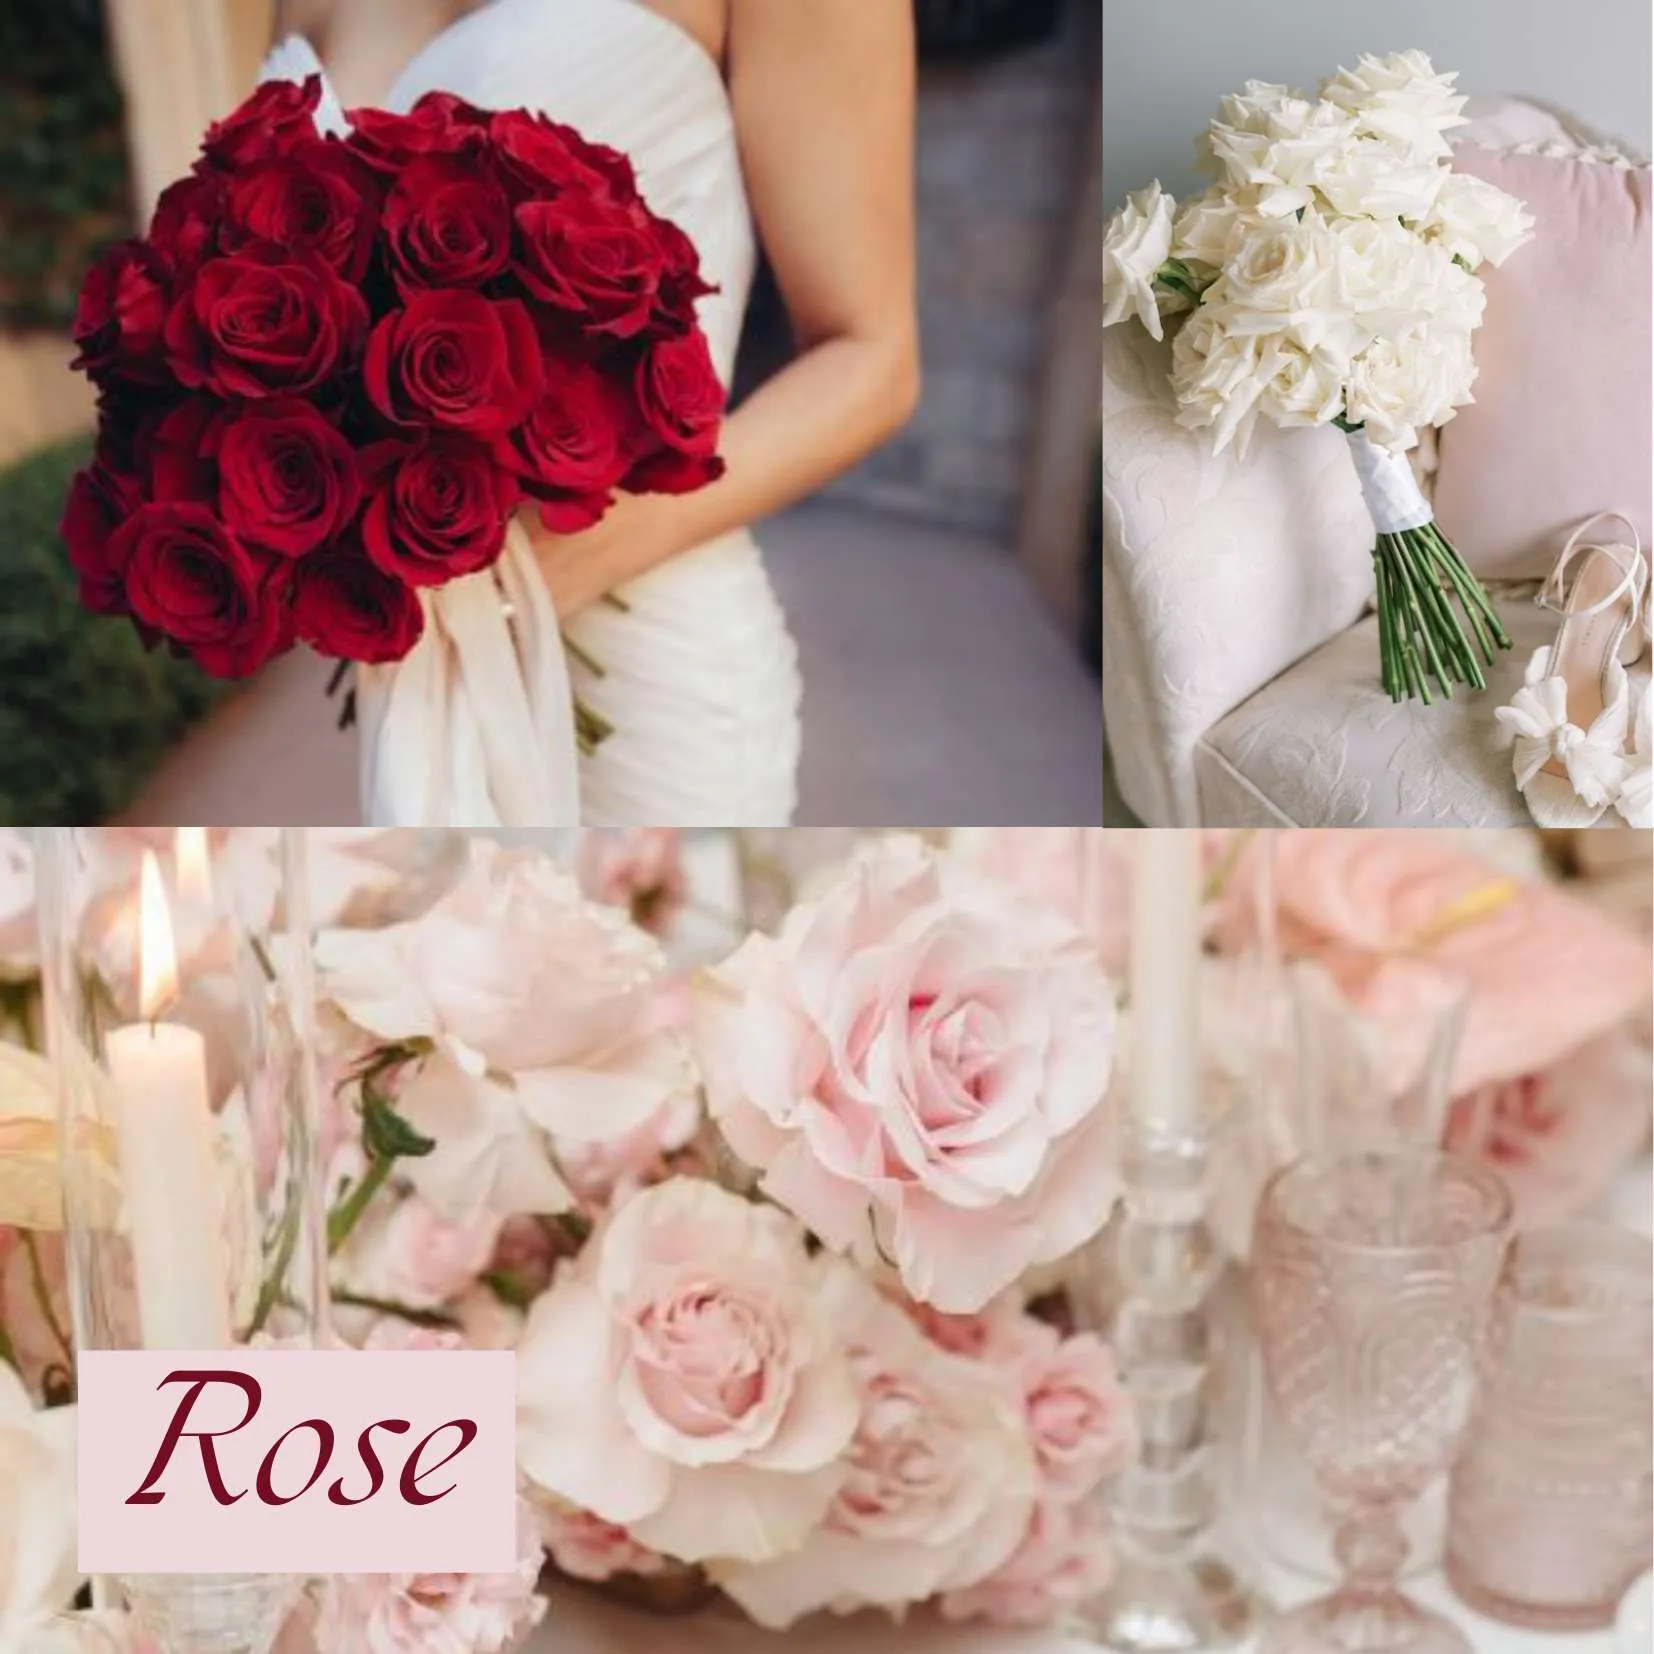 ดอกไม้ในวันแต่งงาน - ดอกกุหลาบ (Rose)